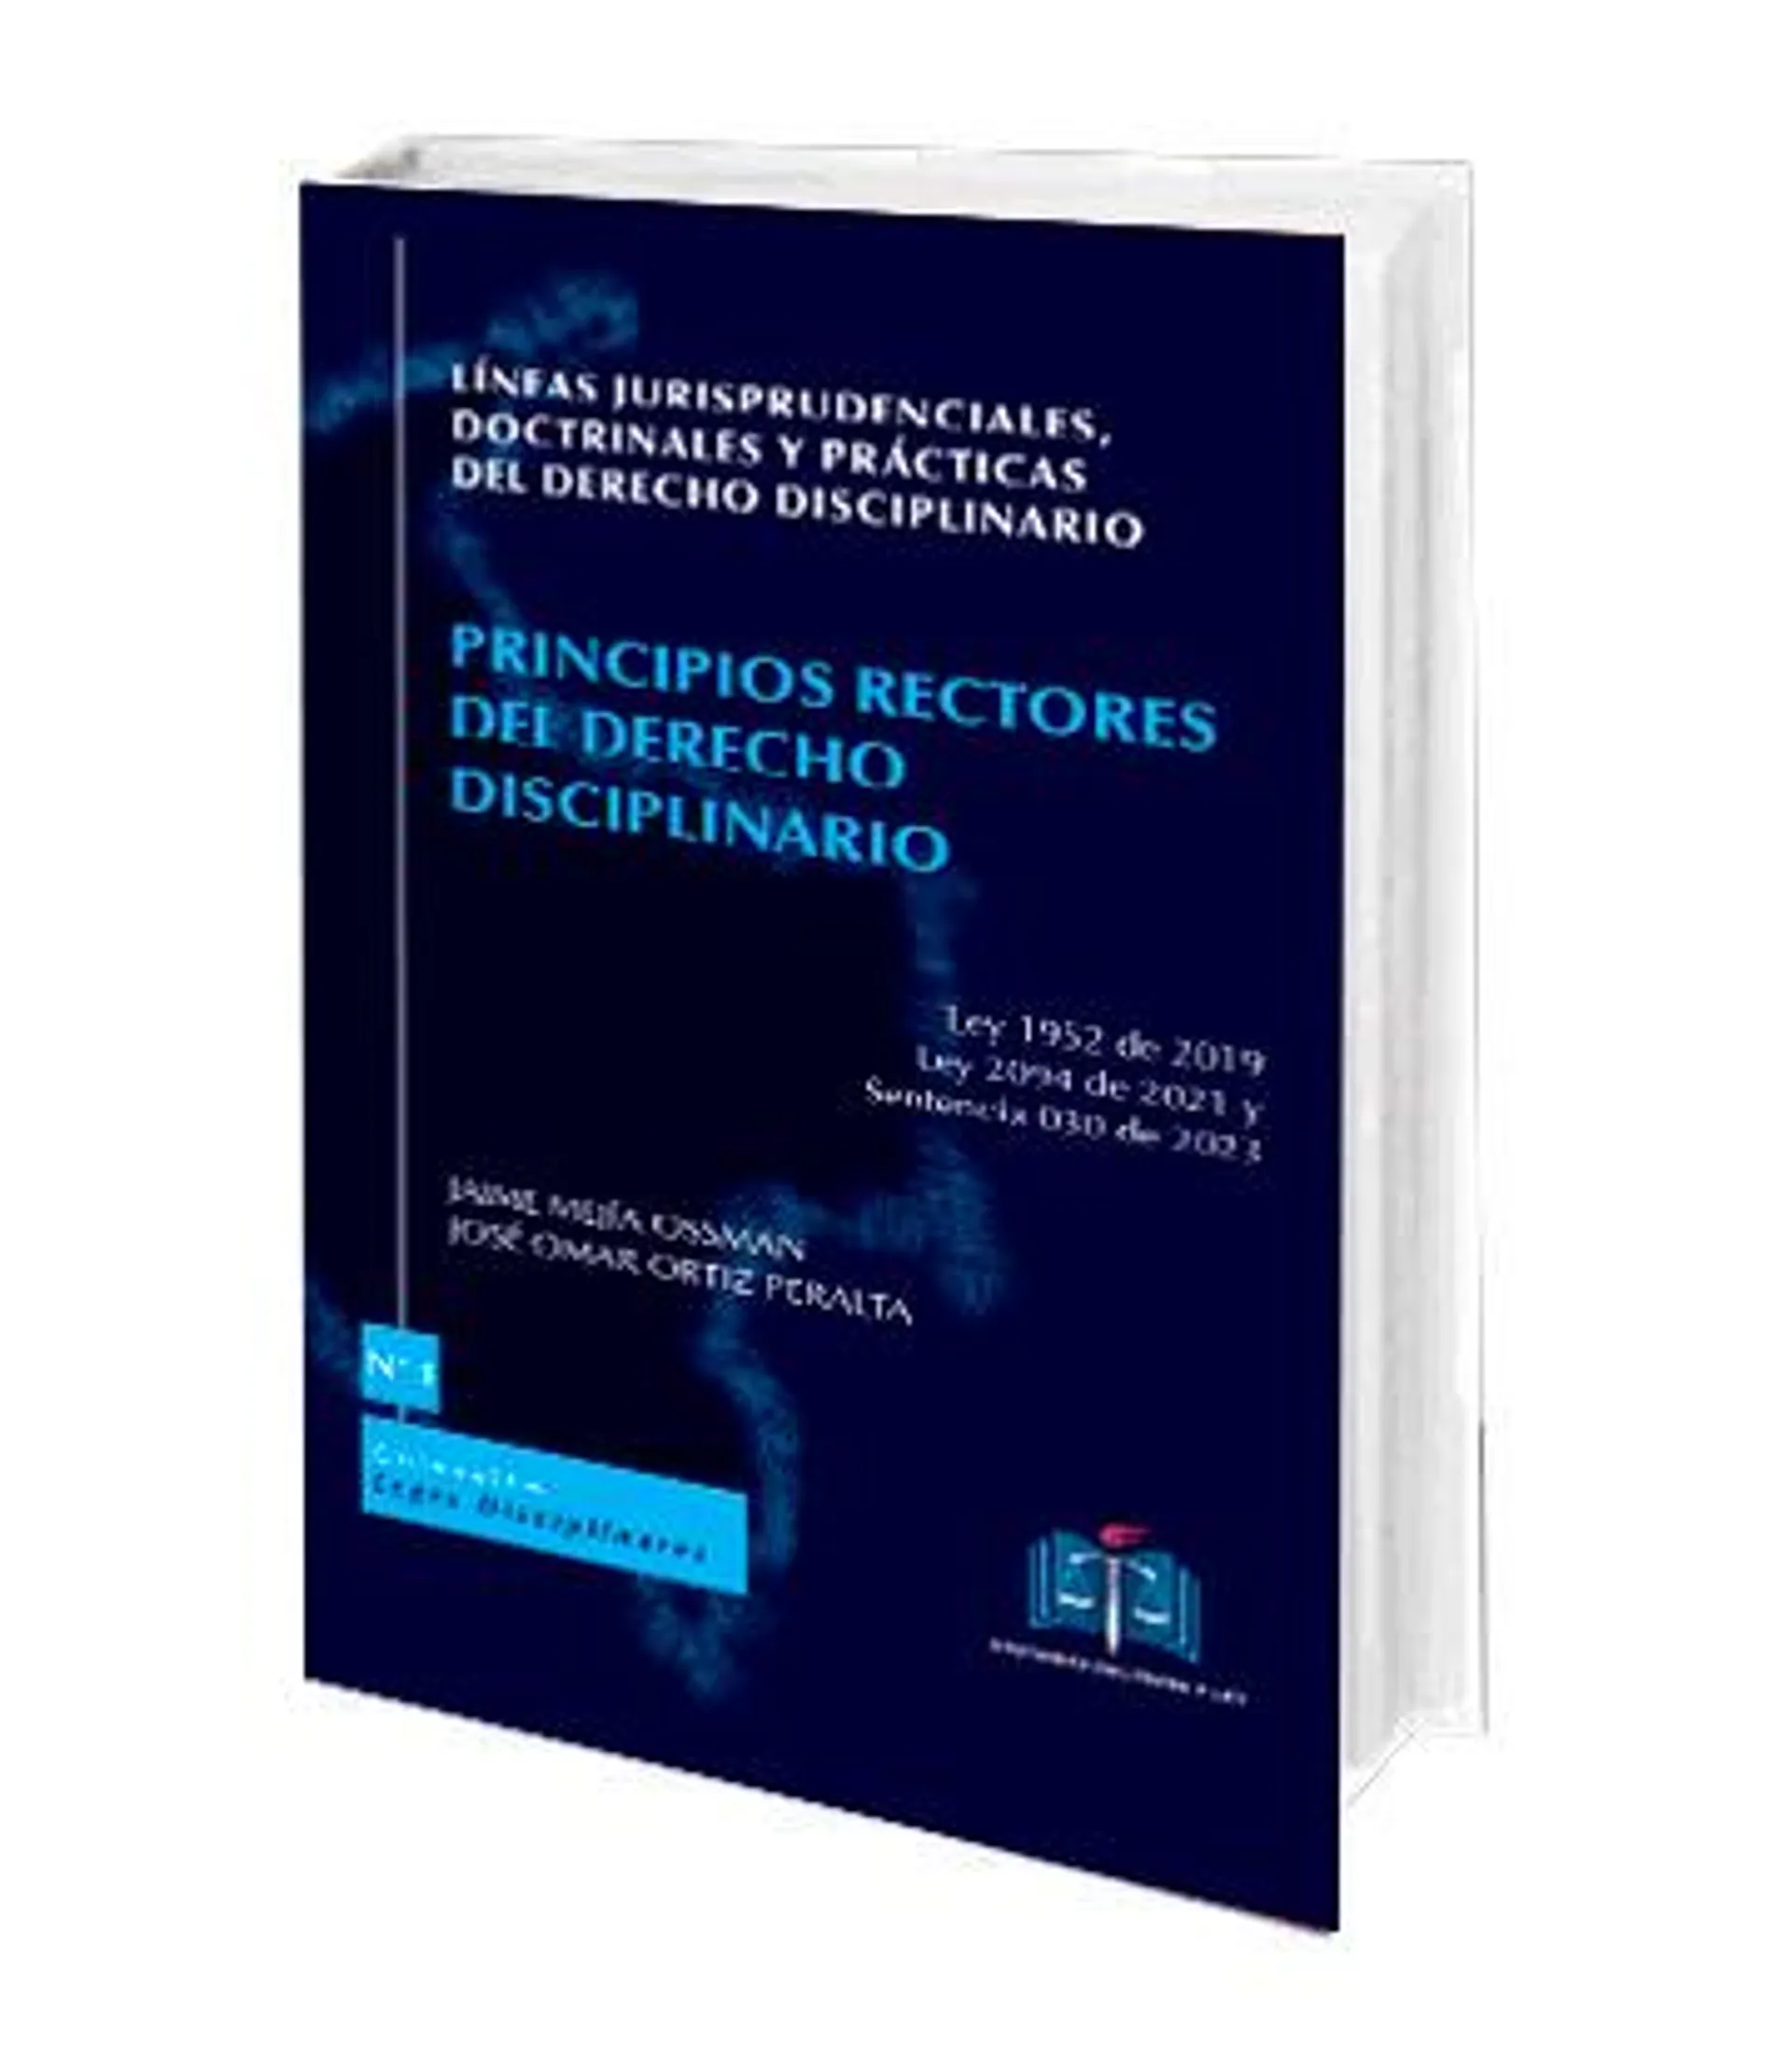 Lineas jurisprudenciales, doctrinales y prácticas del derecho disciplinario N° 1 Principios rectores del derecho disciplinario